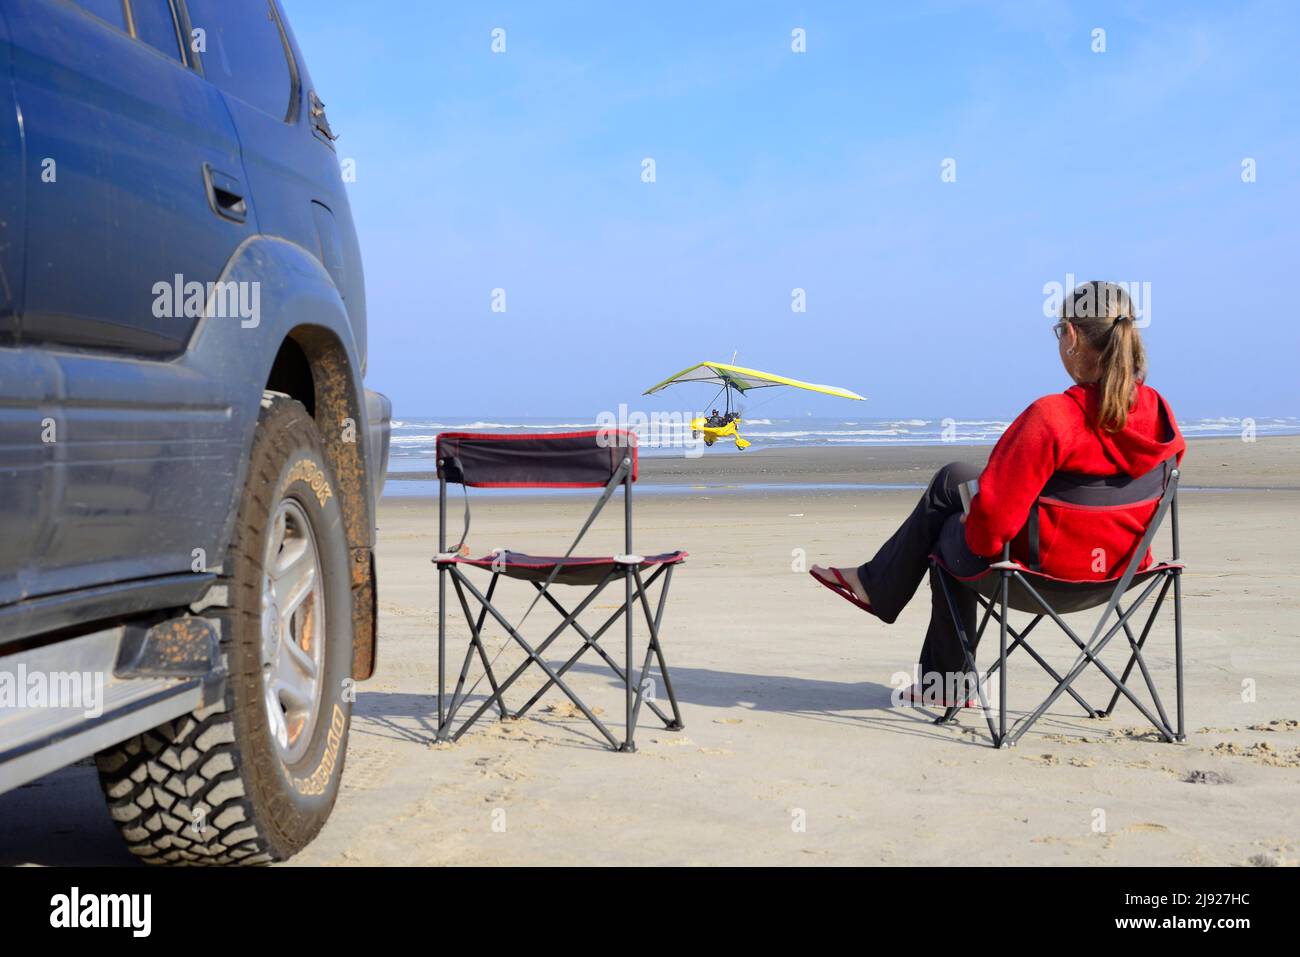 Femme assise sur une chaise de camping à côté d'un véhicule tout-terrain sur la plage et regardant un avion léger départir, ULM, Torres, Rio Grande do Sul, Brésil Banque D'Images